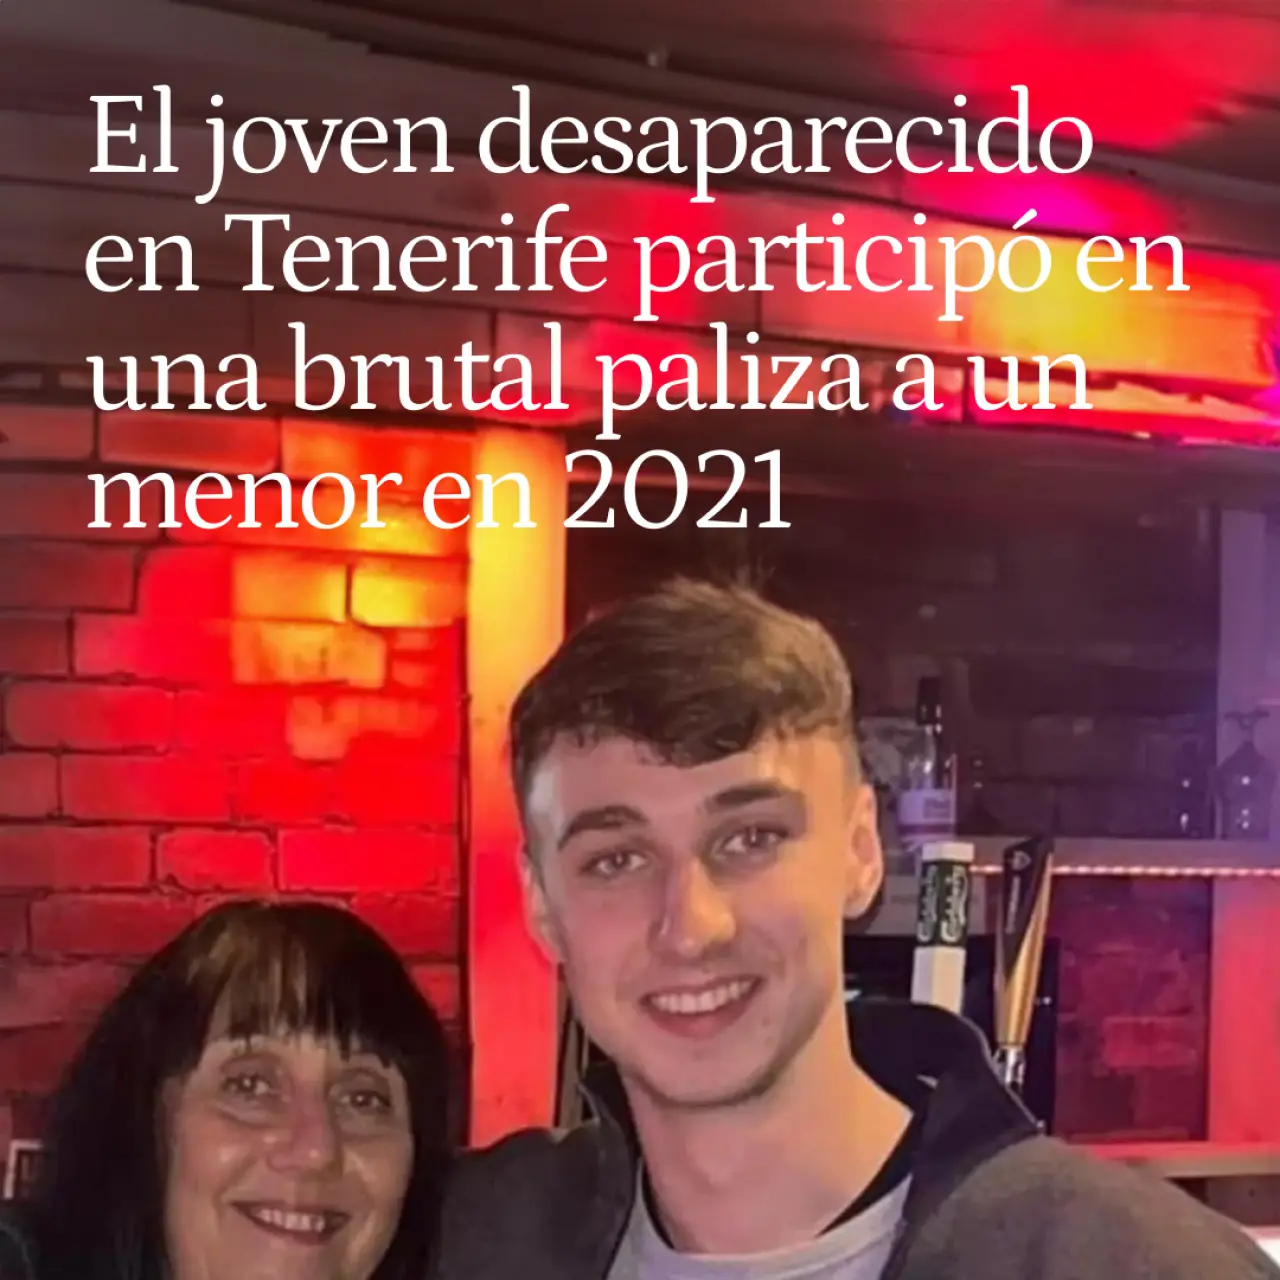 Jay Slater, el joven desaparecido en Tenerife, participó en una brutal paliza a un menor en 2021